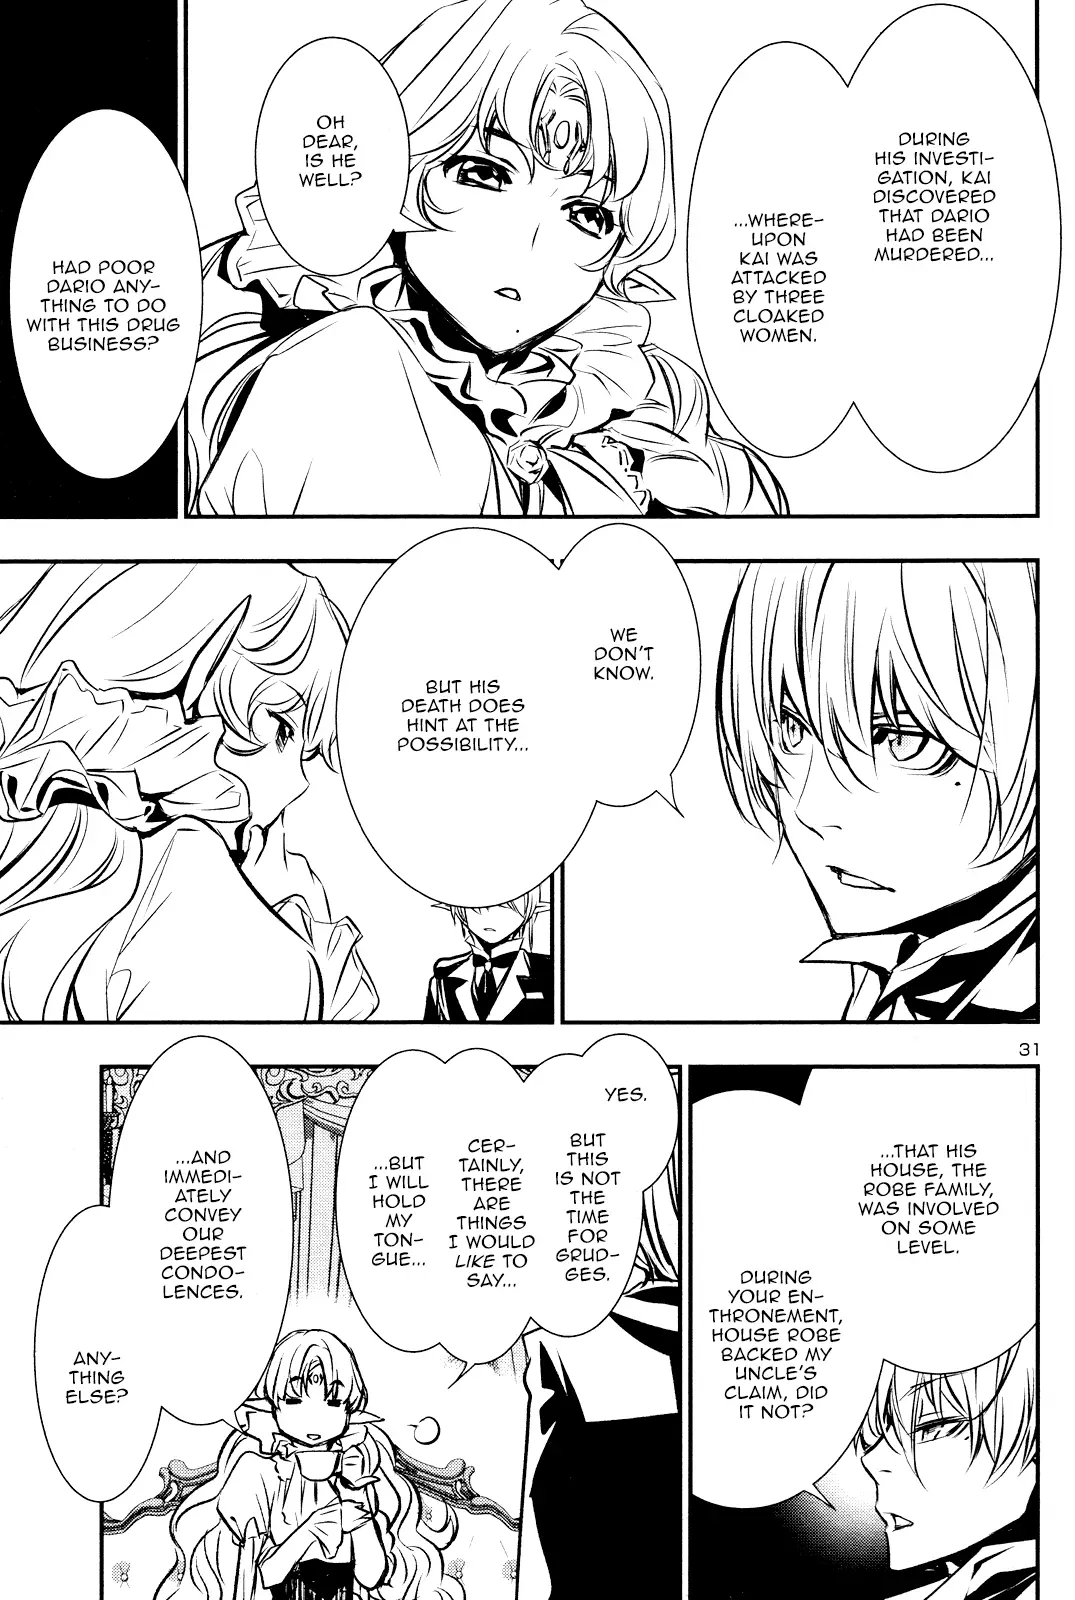 Shinju no Nectar - 32 page 30